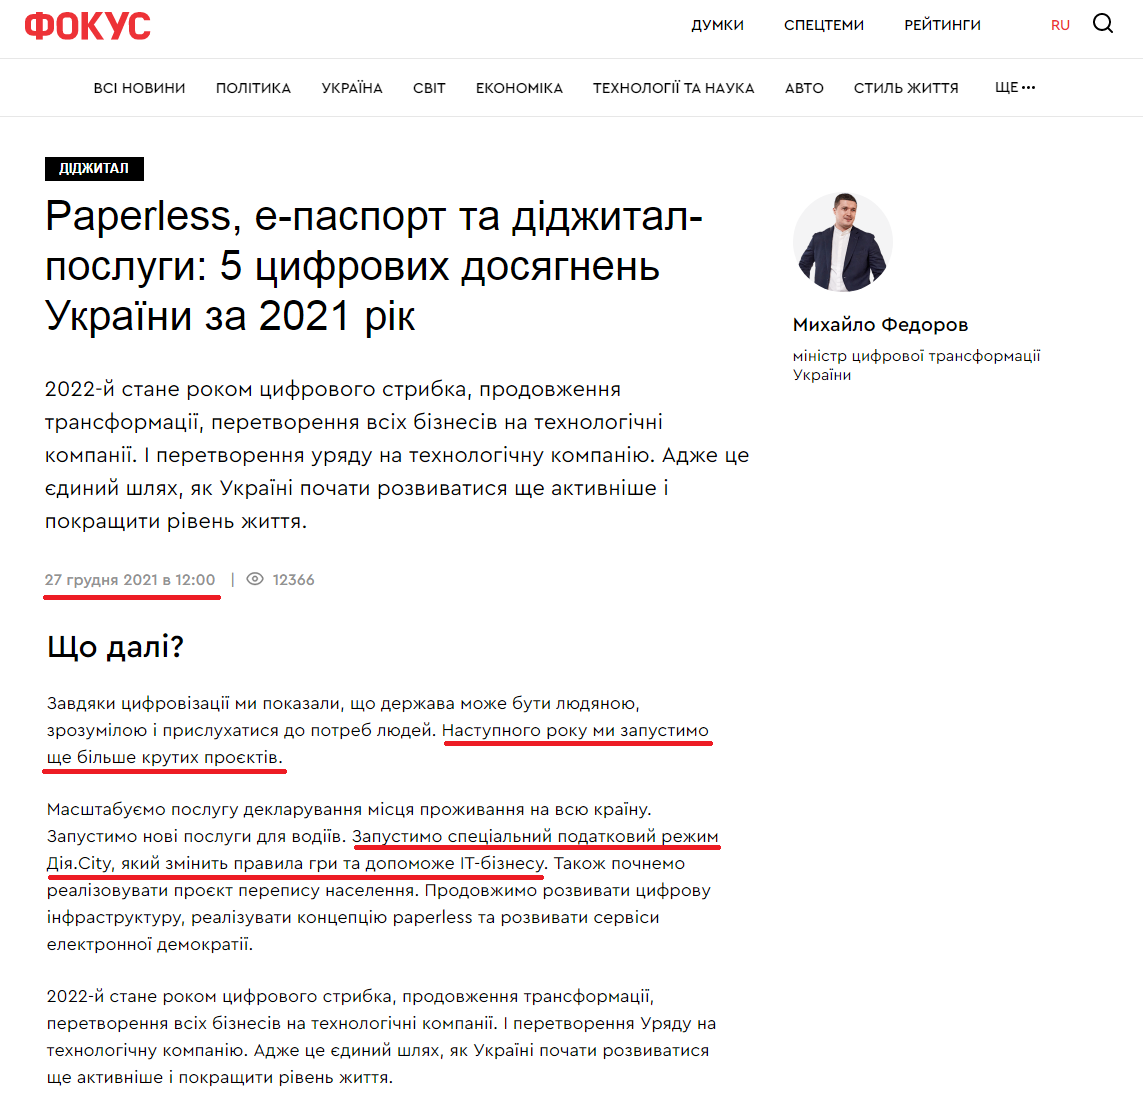 https://focus.ua/uk/digital/501671-paperless-e-pasport-i-didzhital-uslugi-5-cifrovych-dostizheniy-ukrainy-za-2021-god